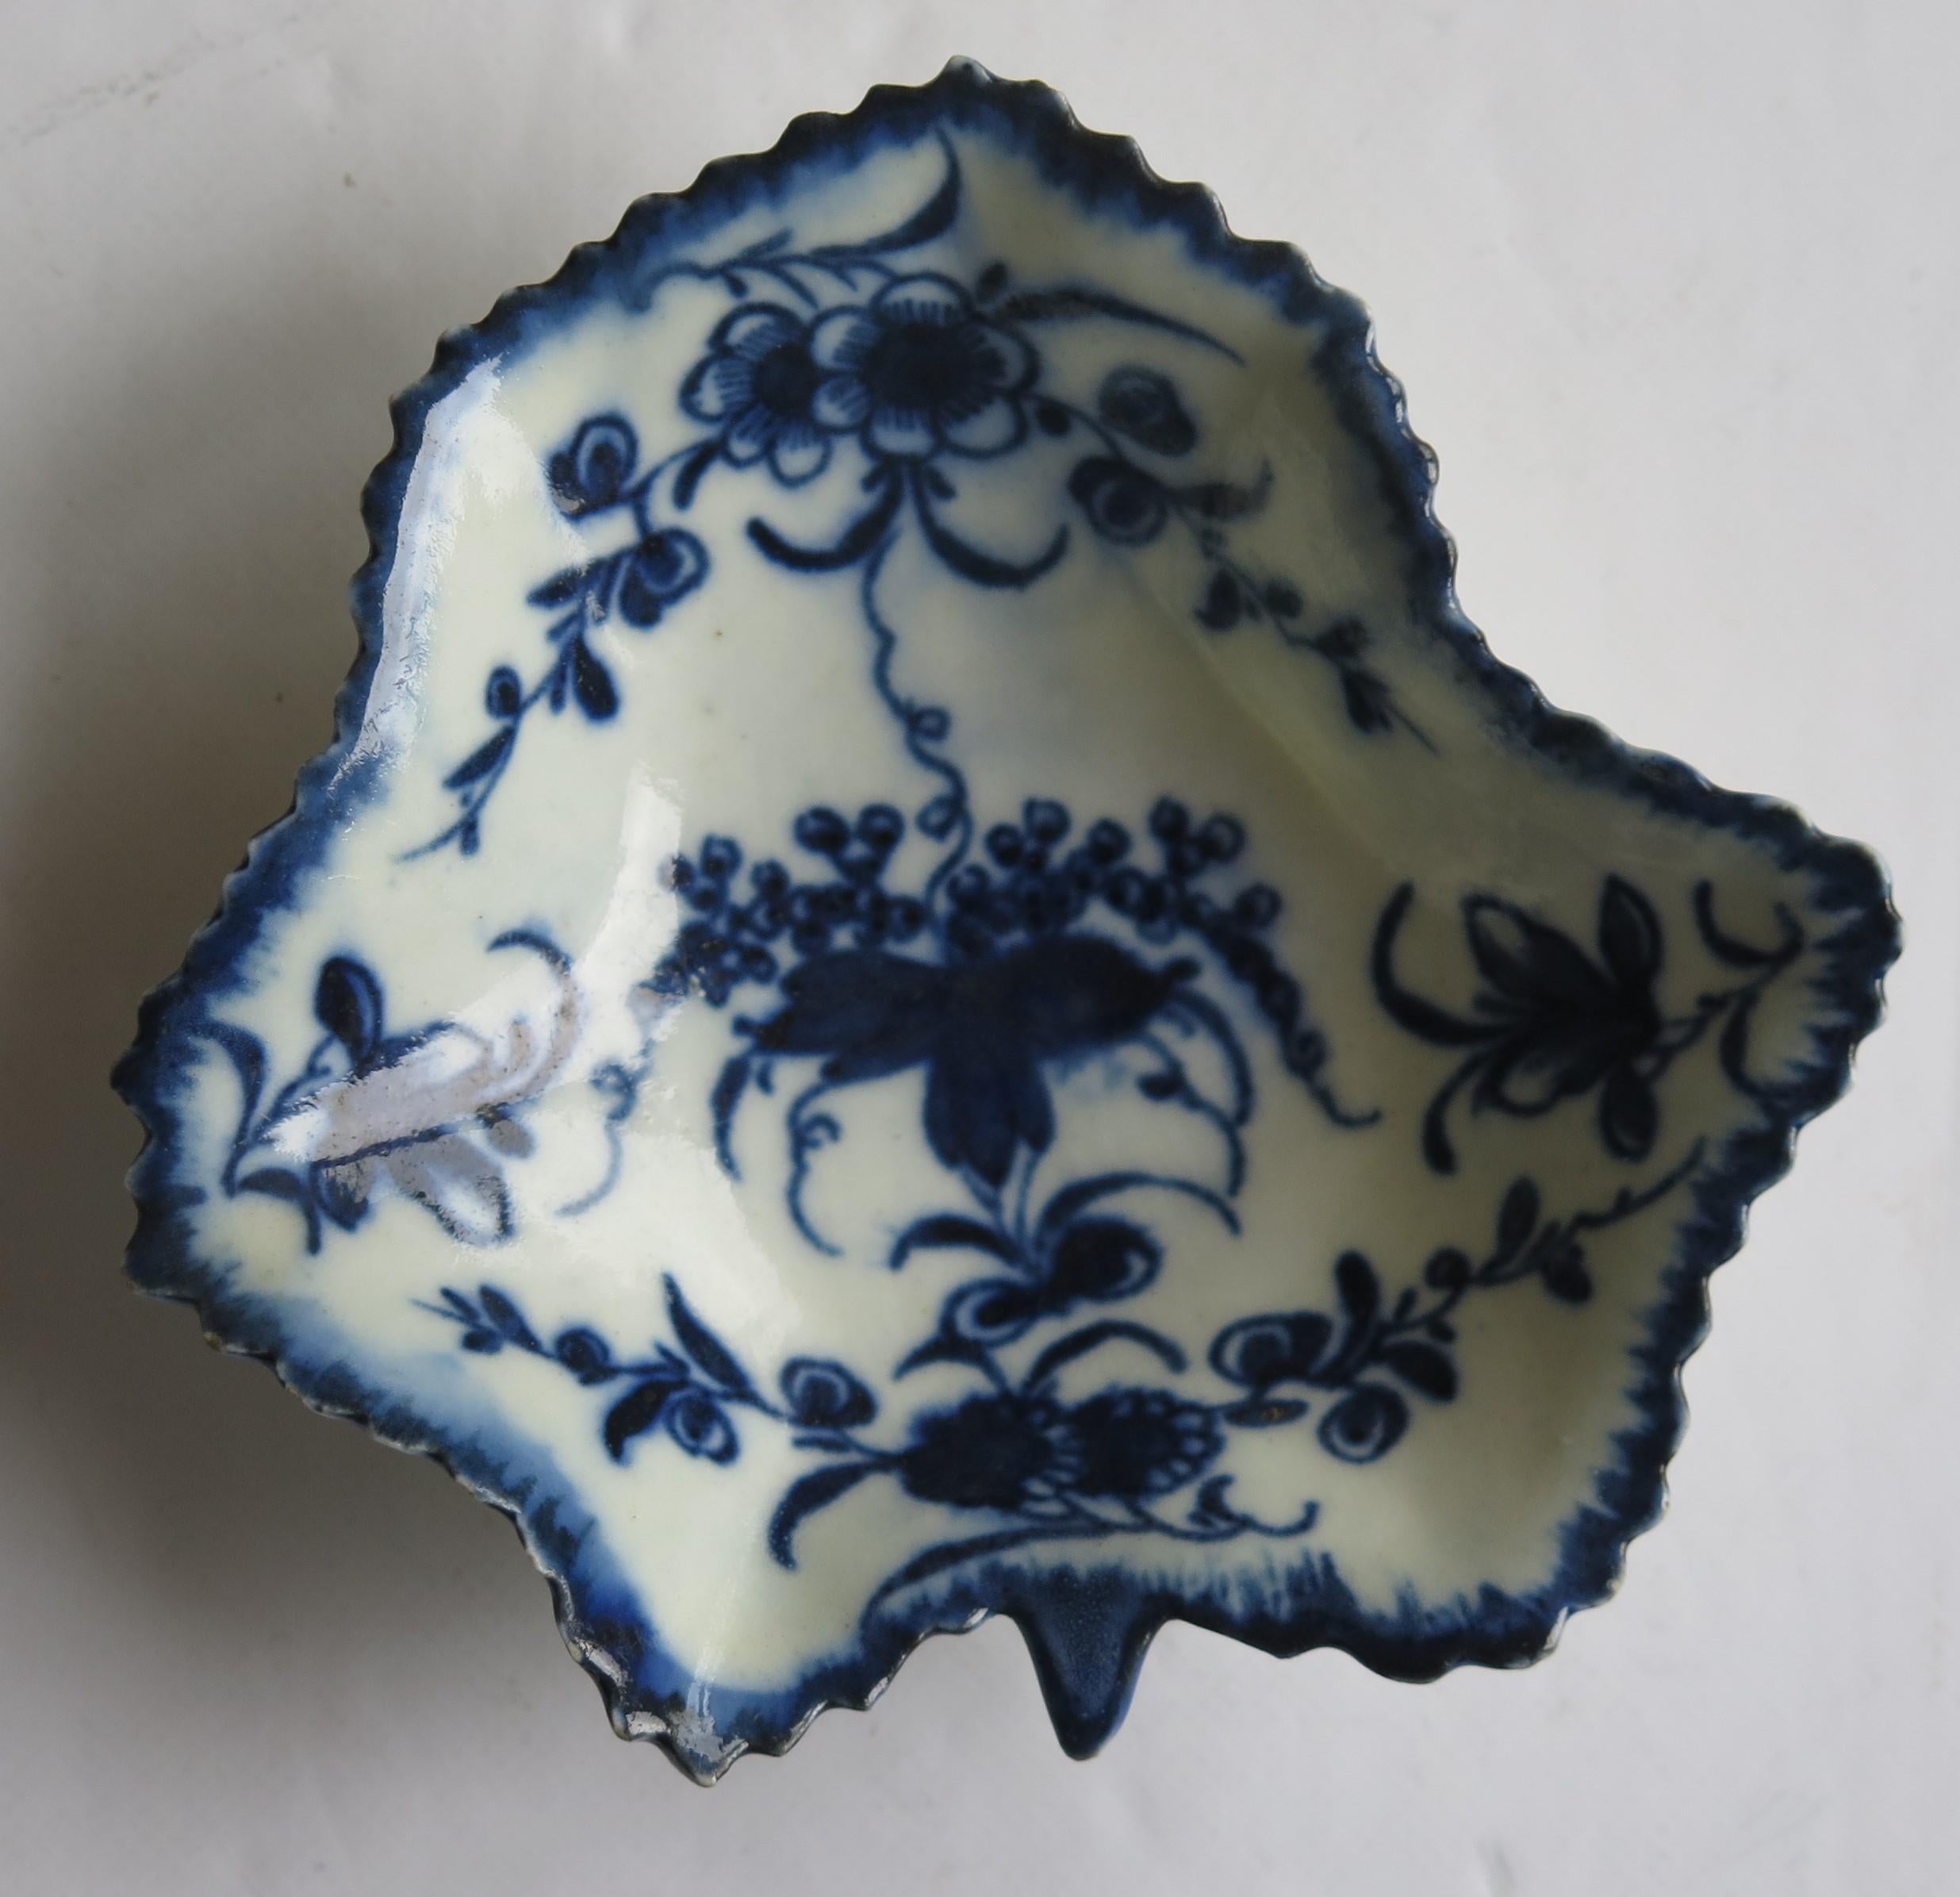 Il s'agit d'un très bon plat à cornichons en porcelaine de Worcester de la première période (Dr. Wall), en forme de feuille, avec un motif floral bleu cobalt profond et une marque Crescent à la base, datant de 1770 à 1775.

Il s'agit d'une pièce